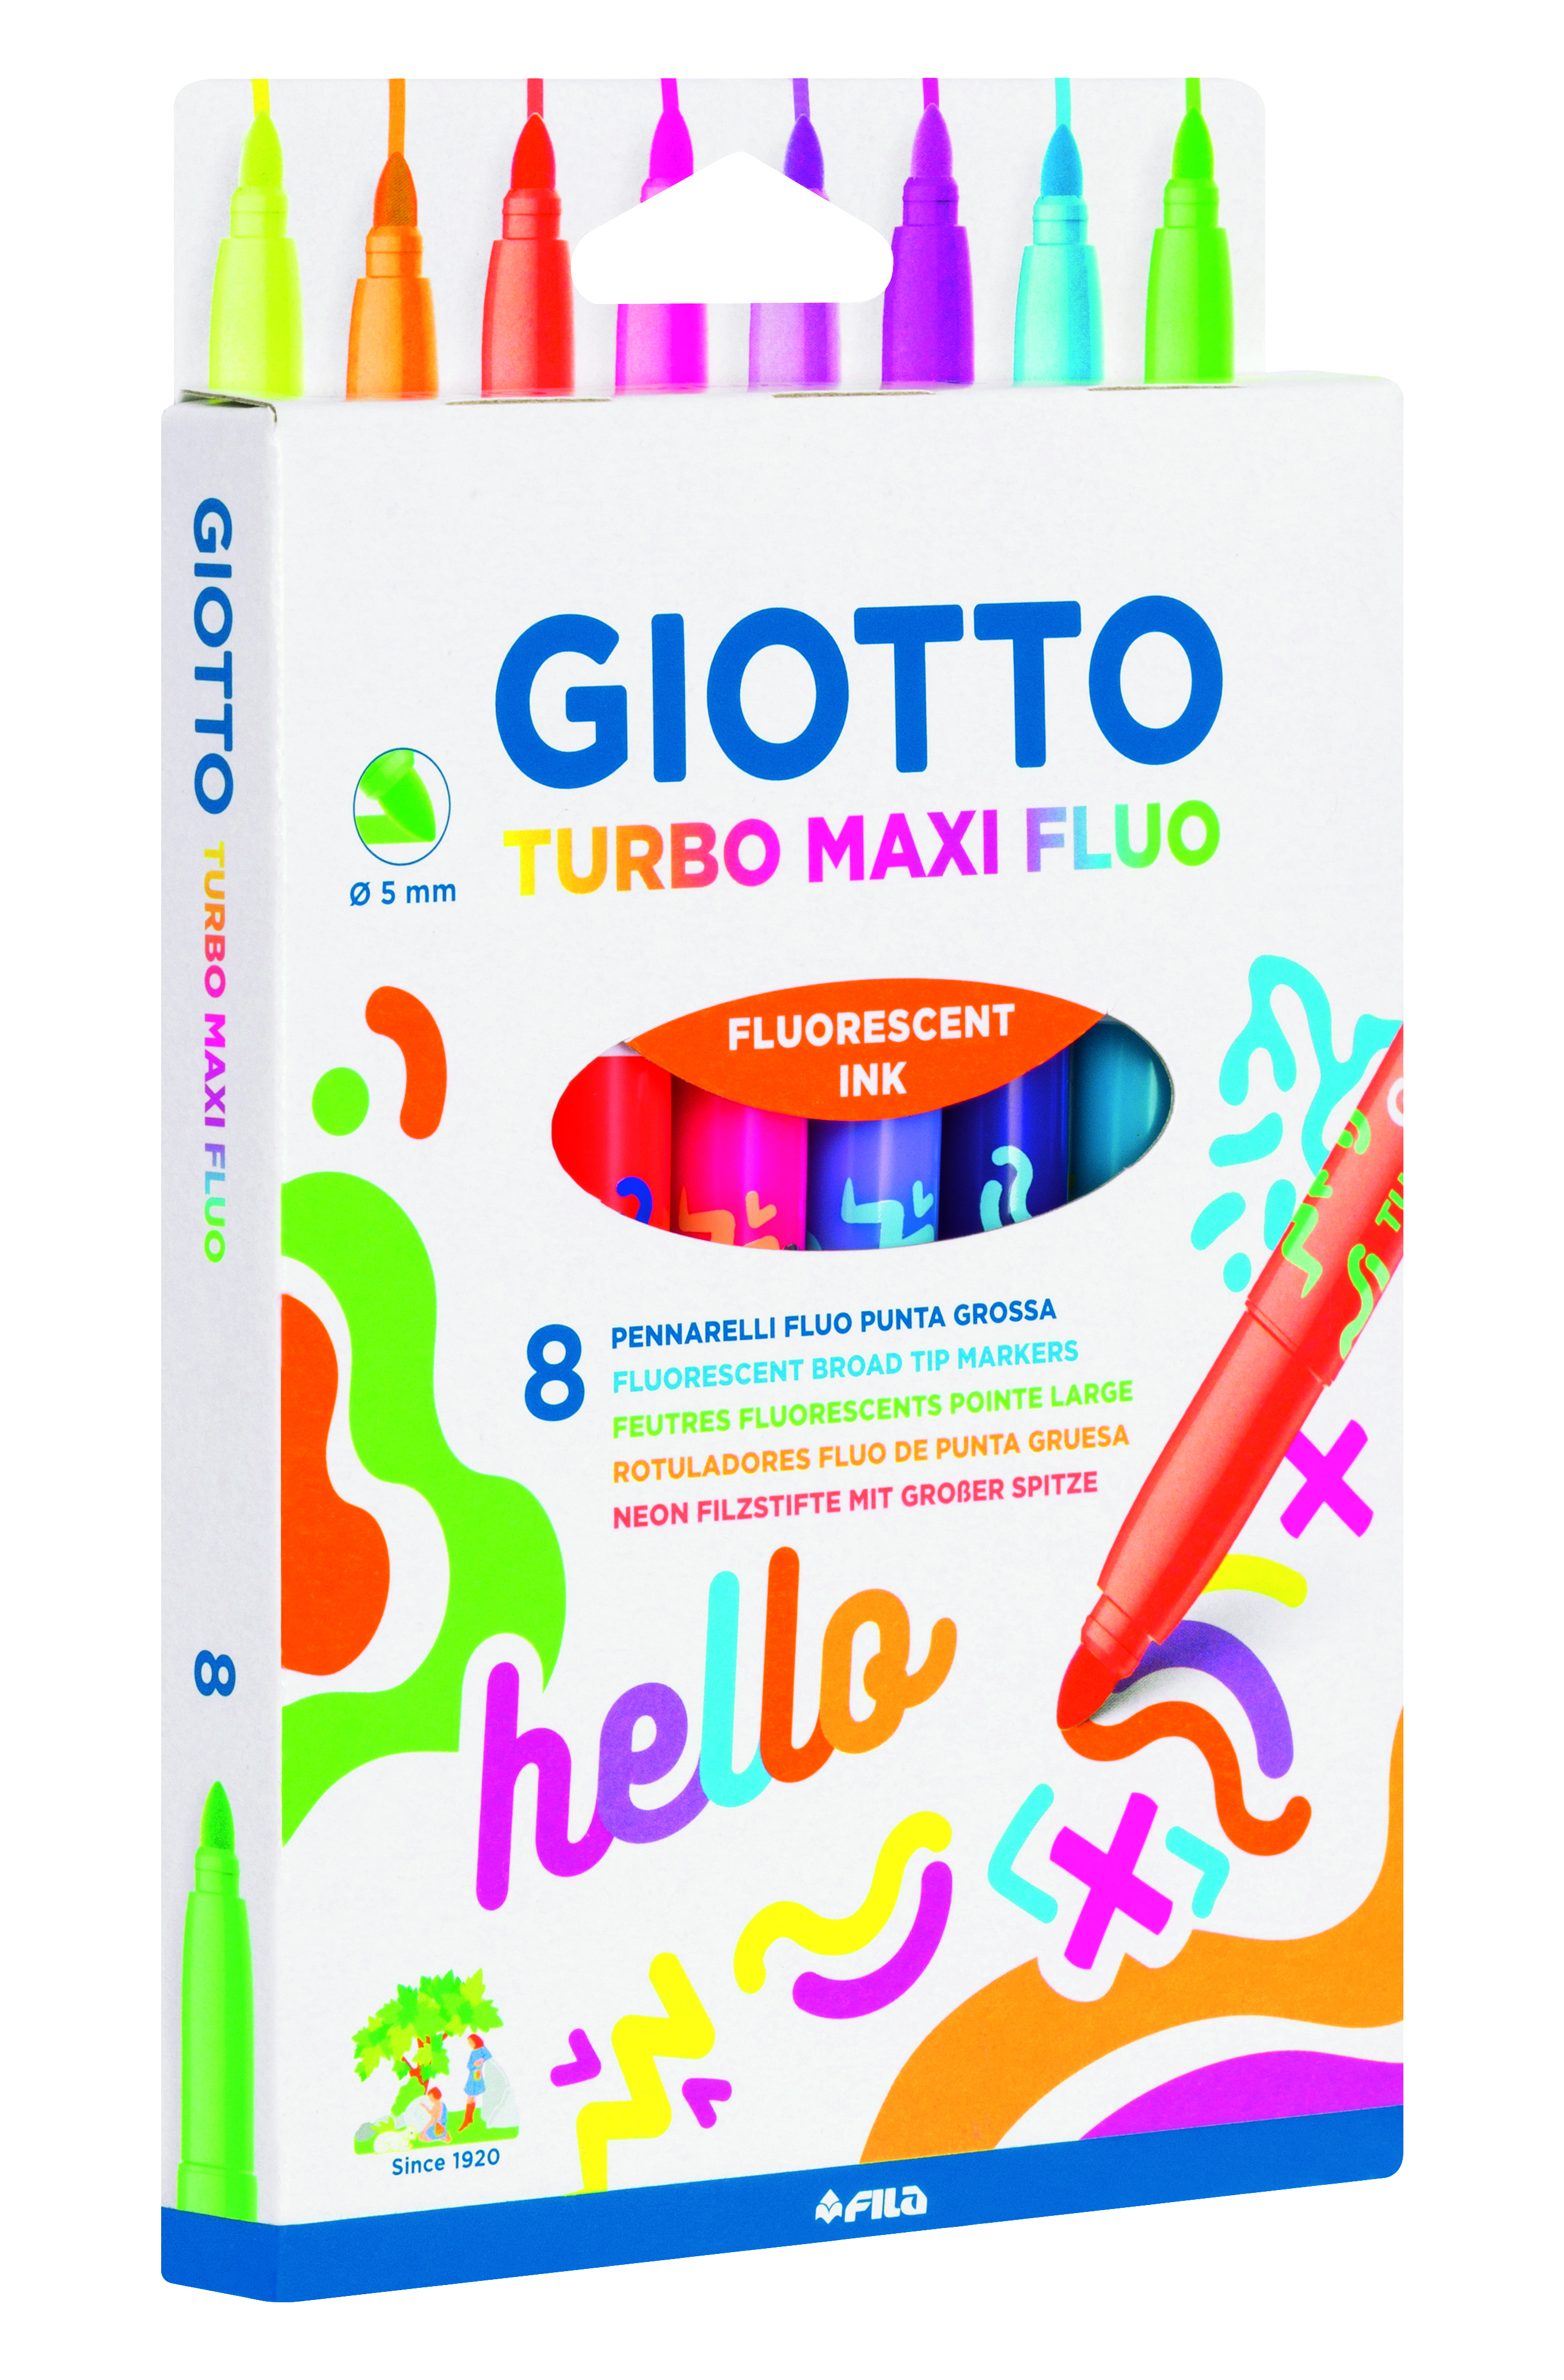 Giotto Turbo Glitter Maxi - Fila France